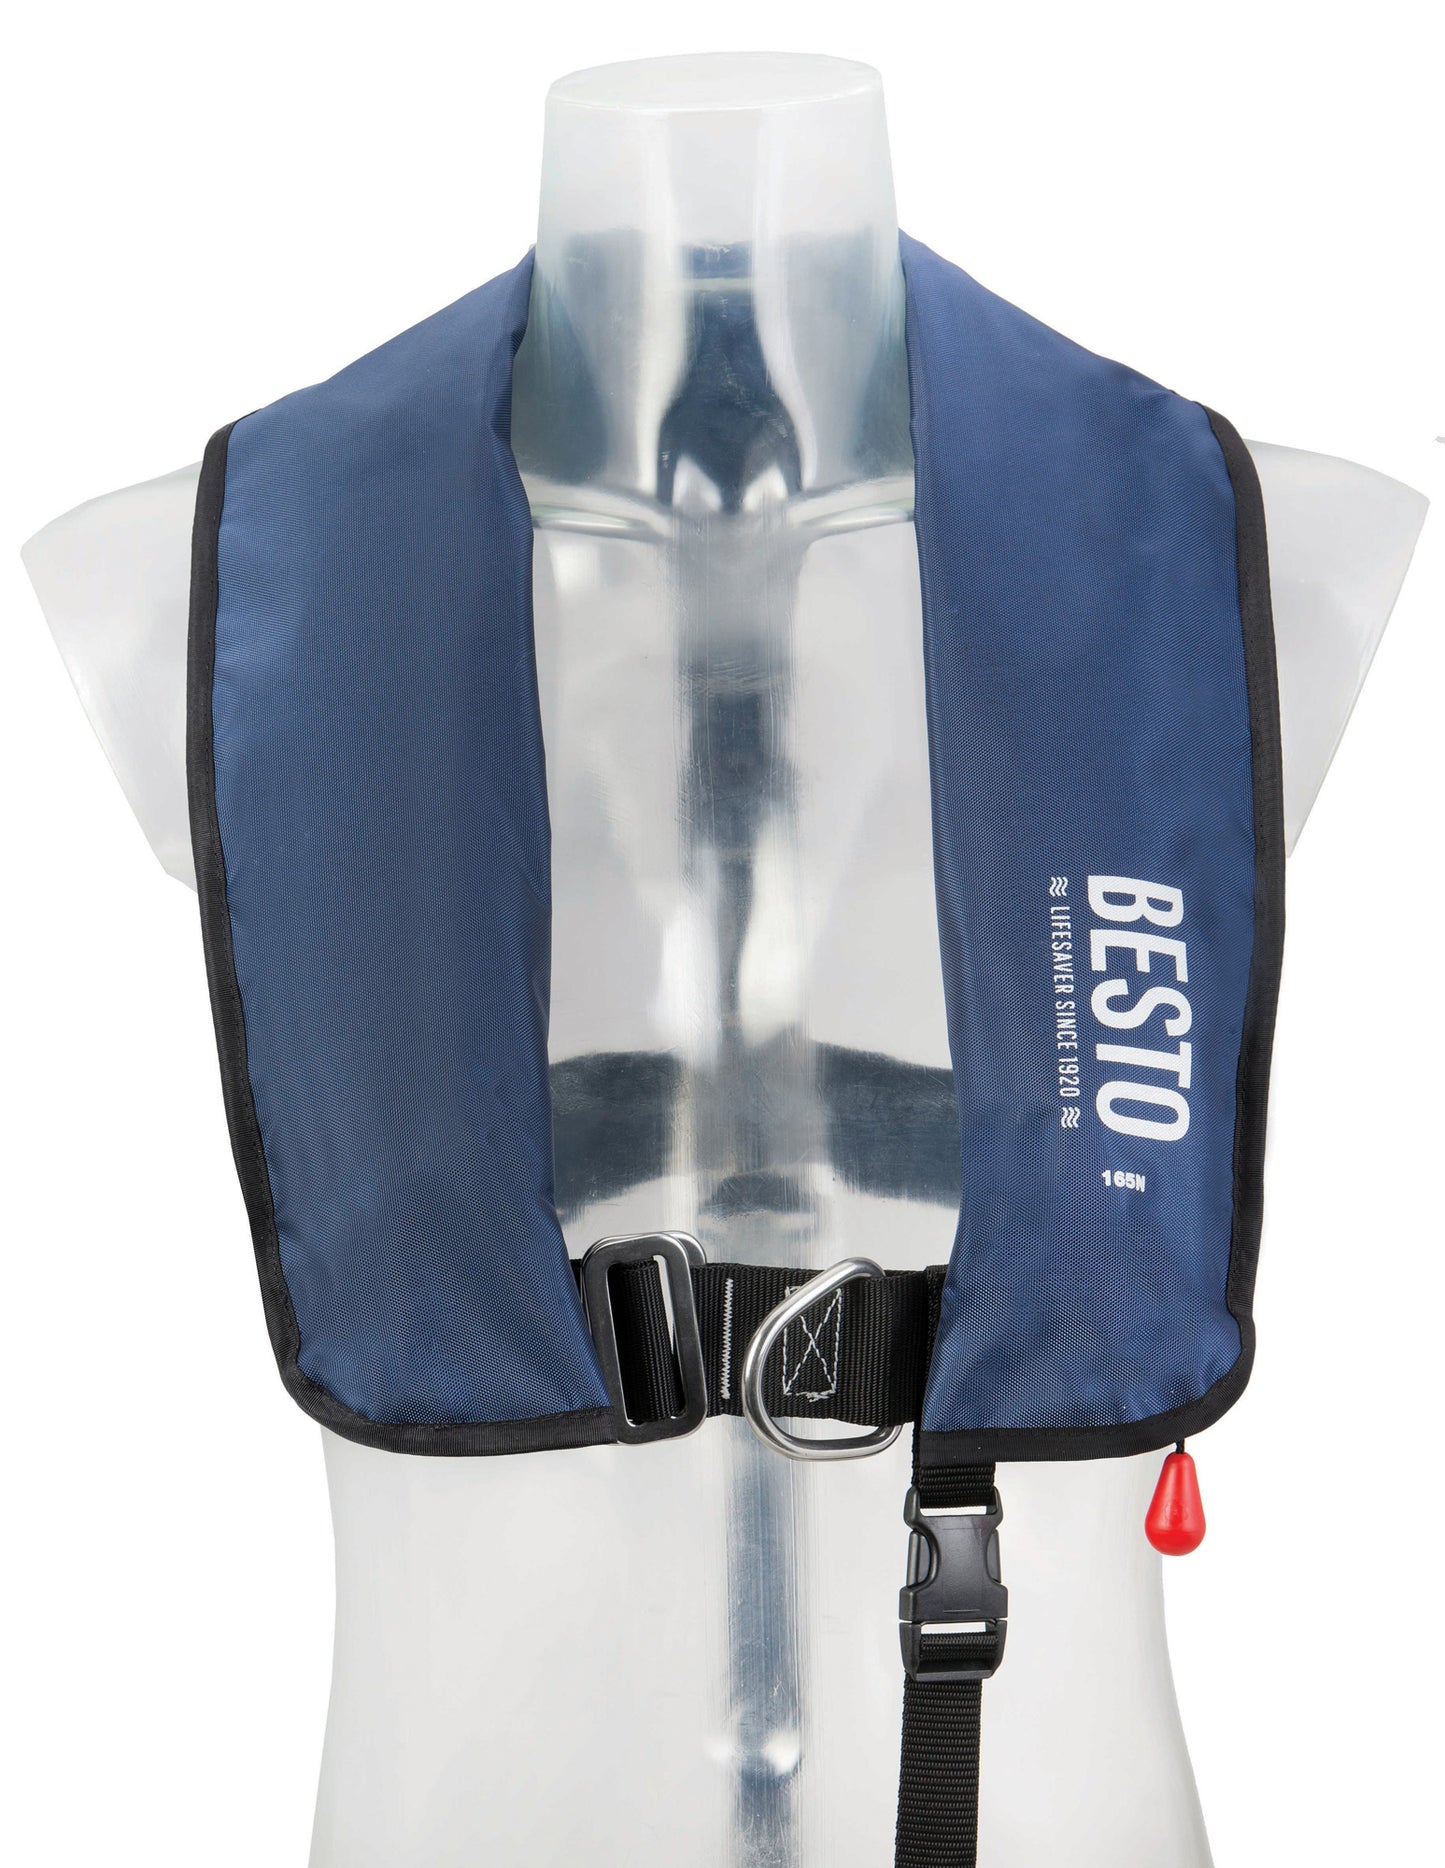 BESTO manual vest 165N